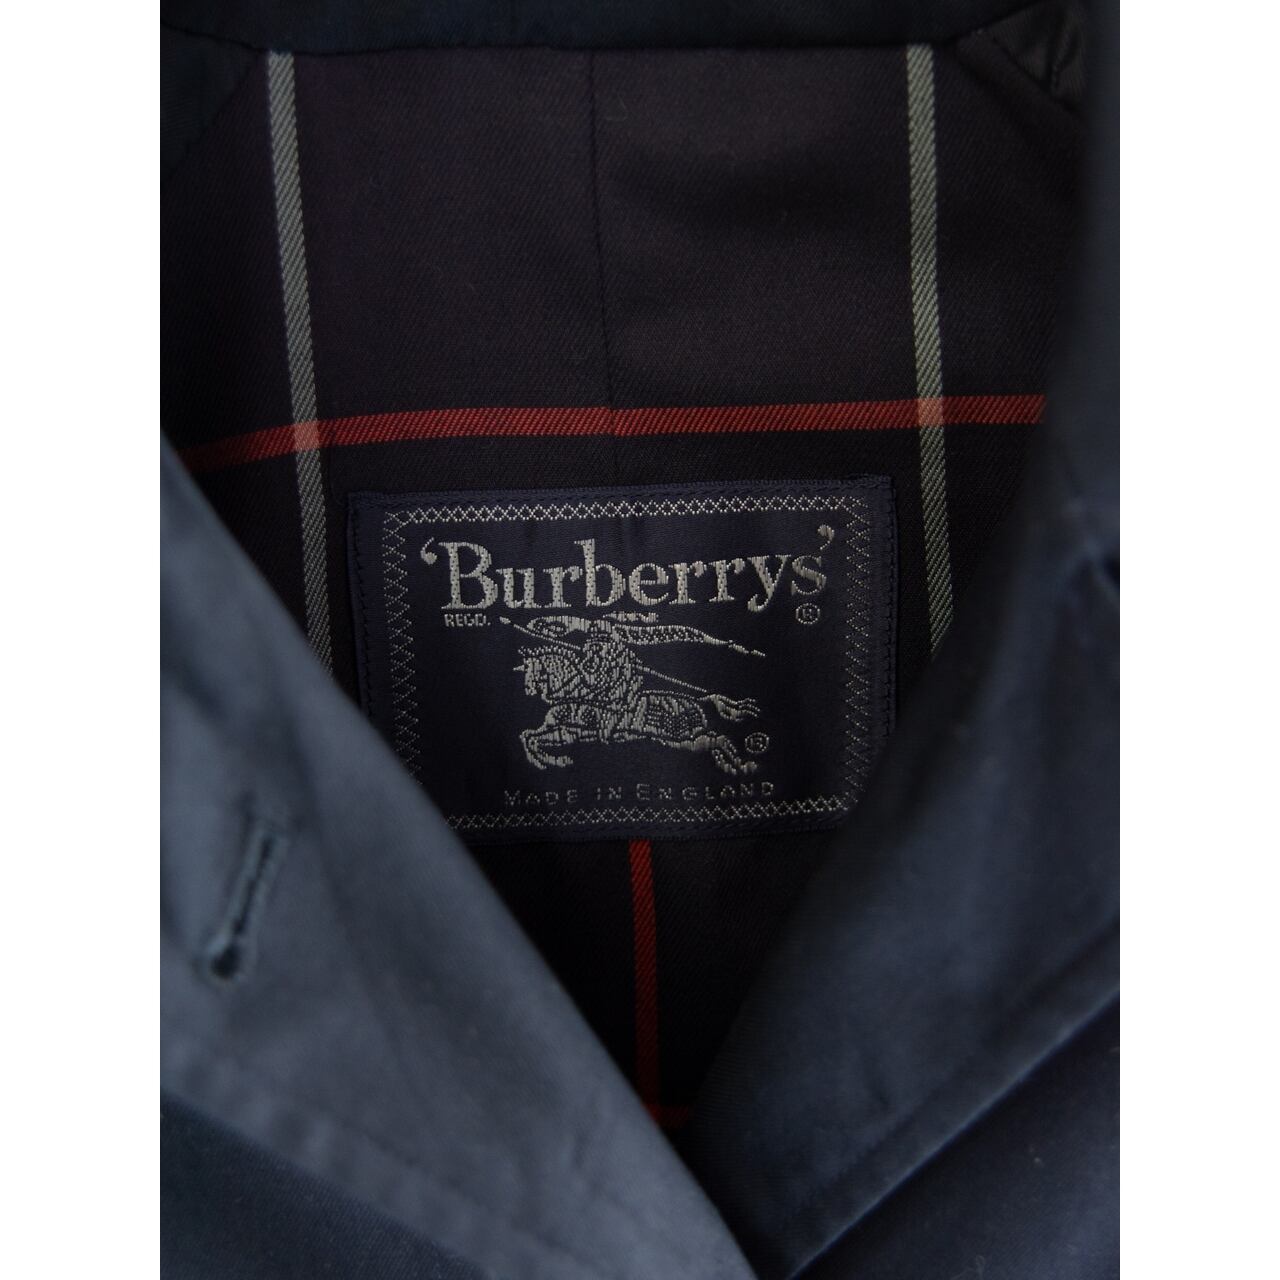 Burberrys】Made in England 90's balmacaan coat soutien collar